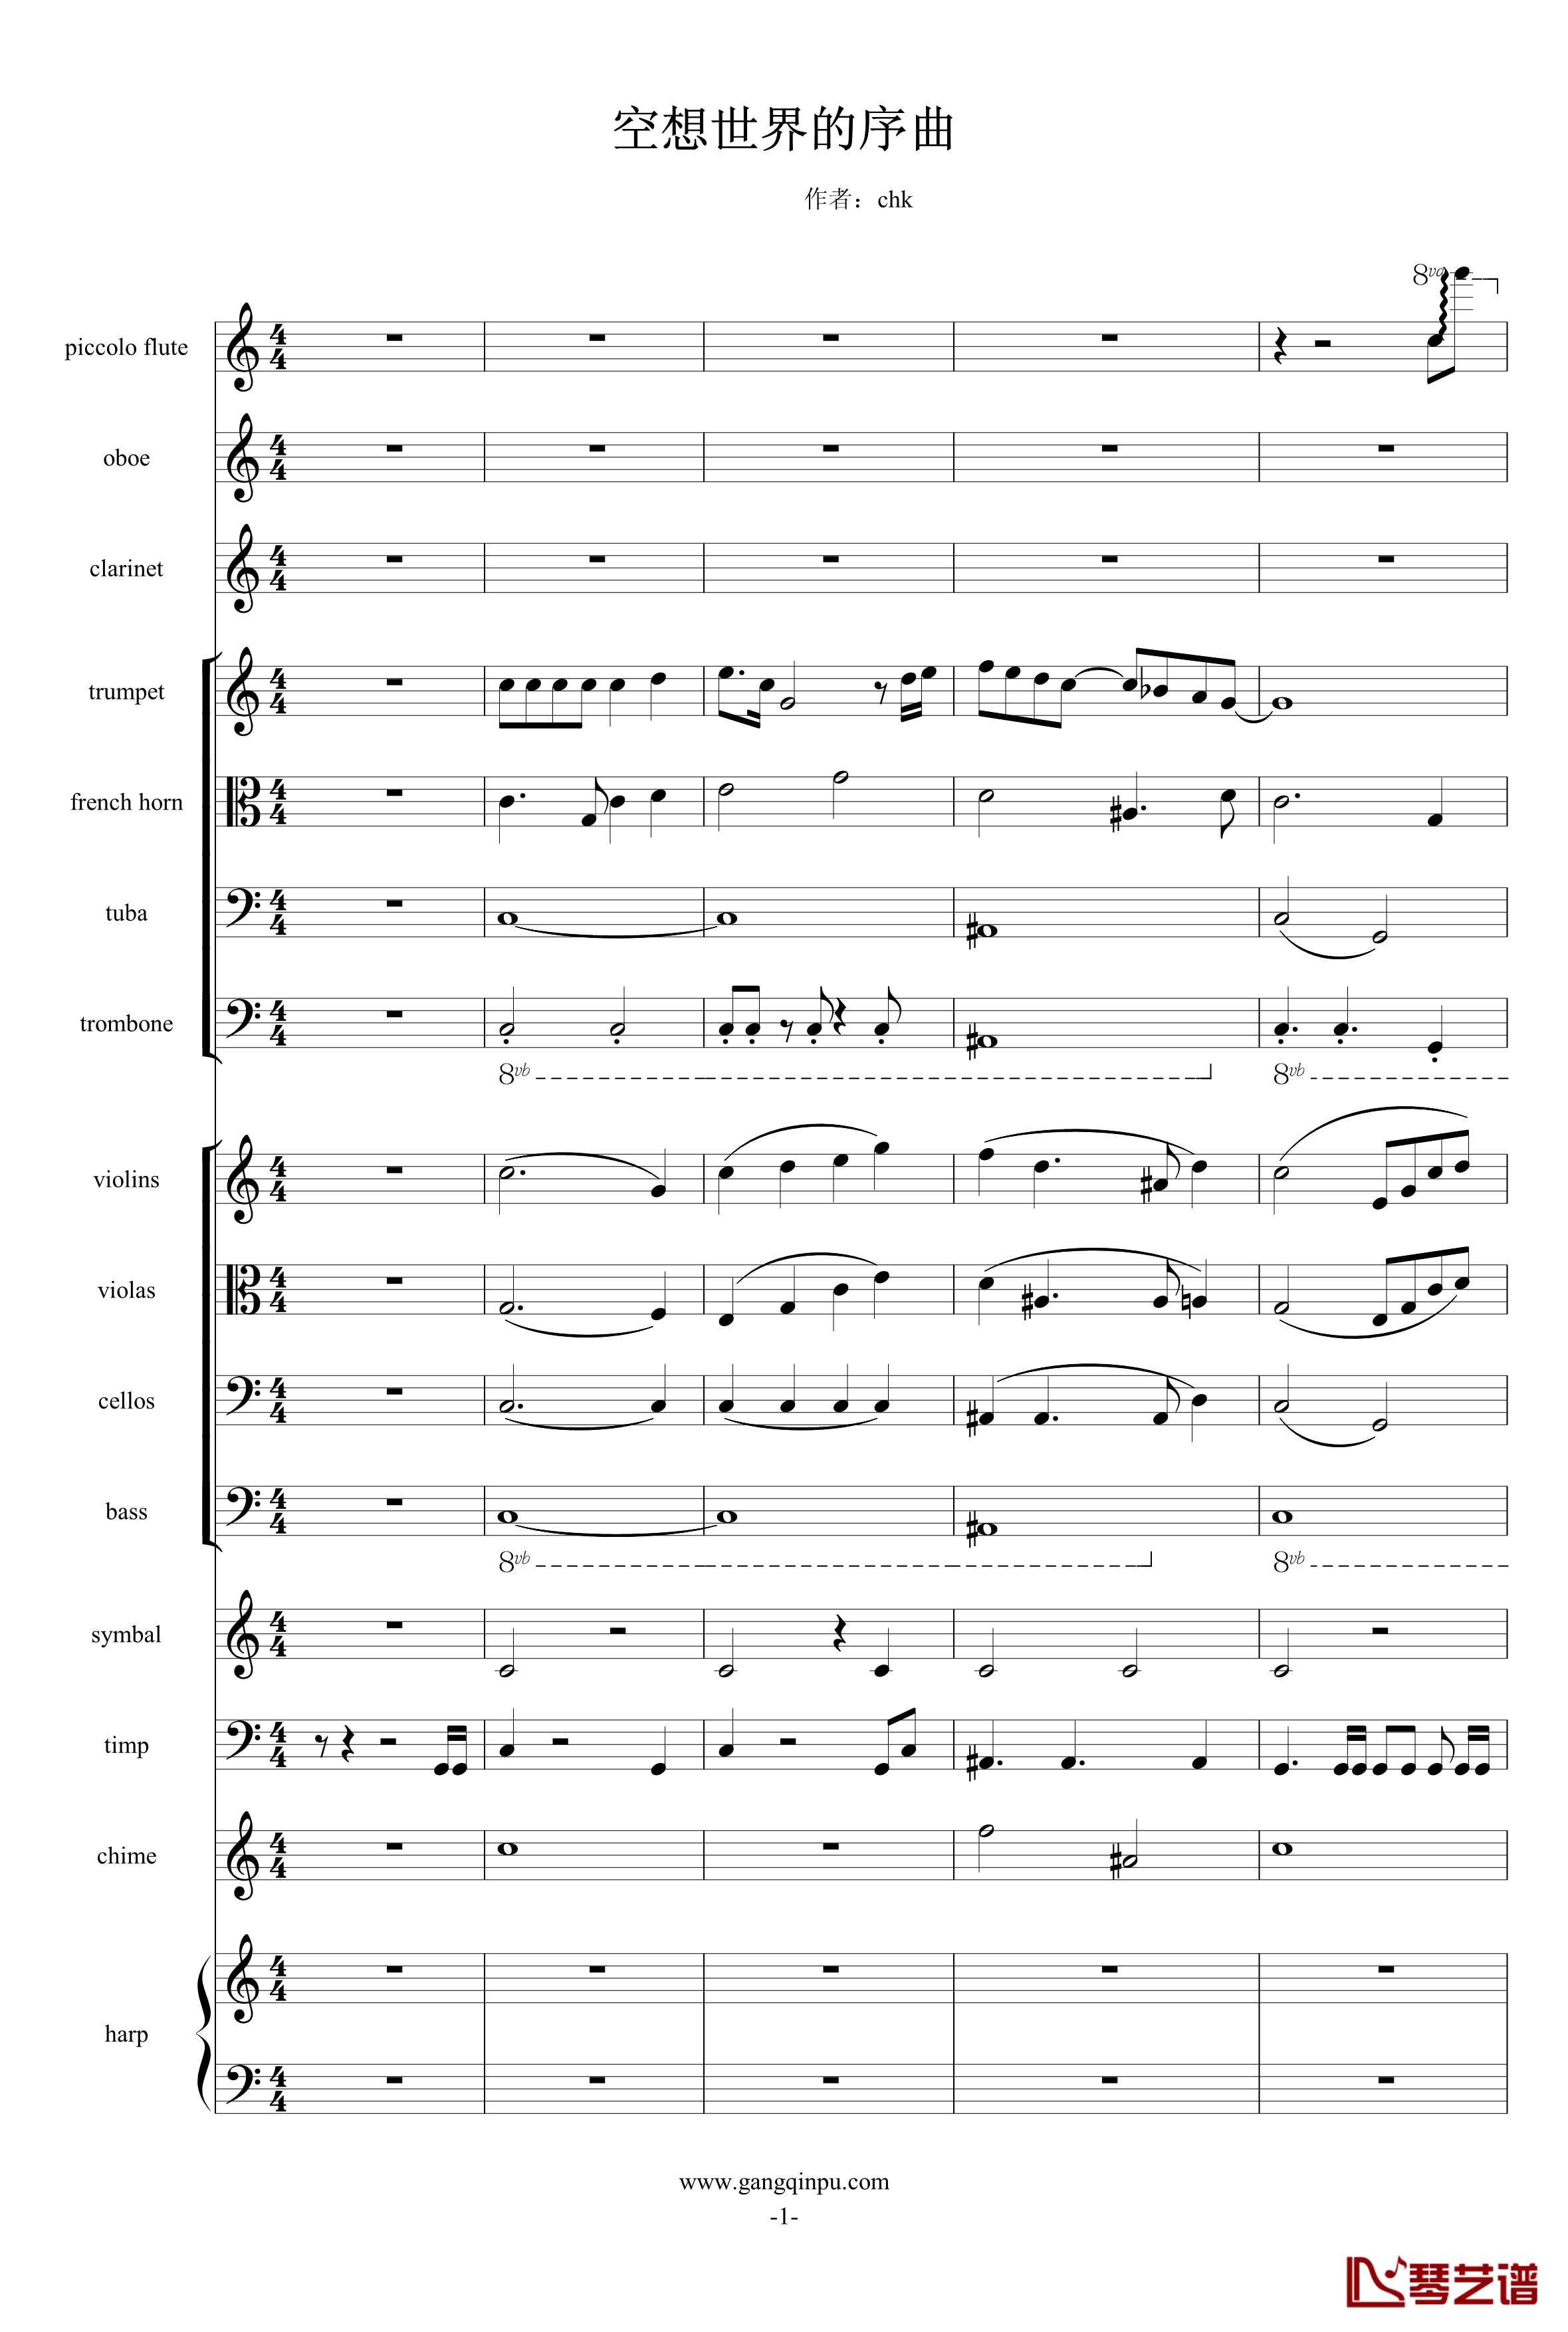 空想世界的序曲钢琴谱-chk918